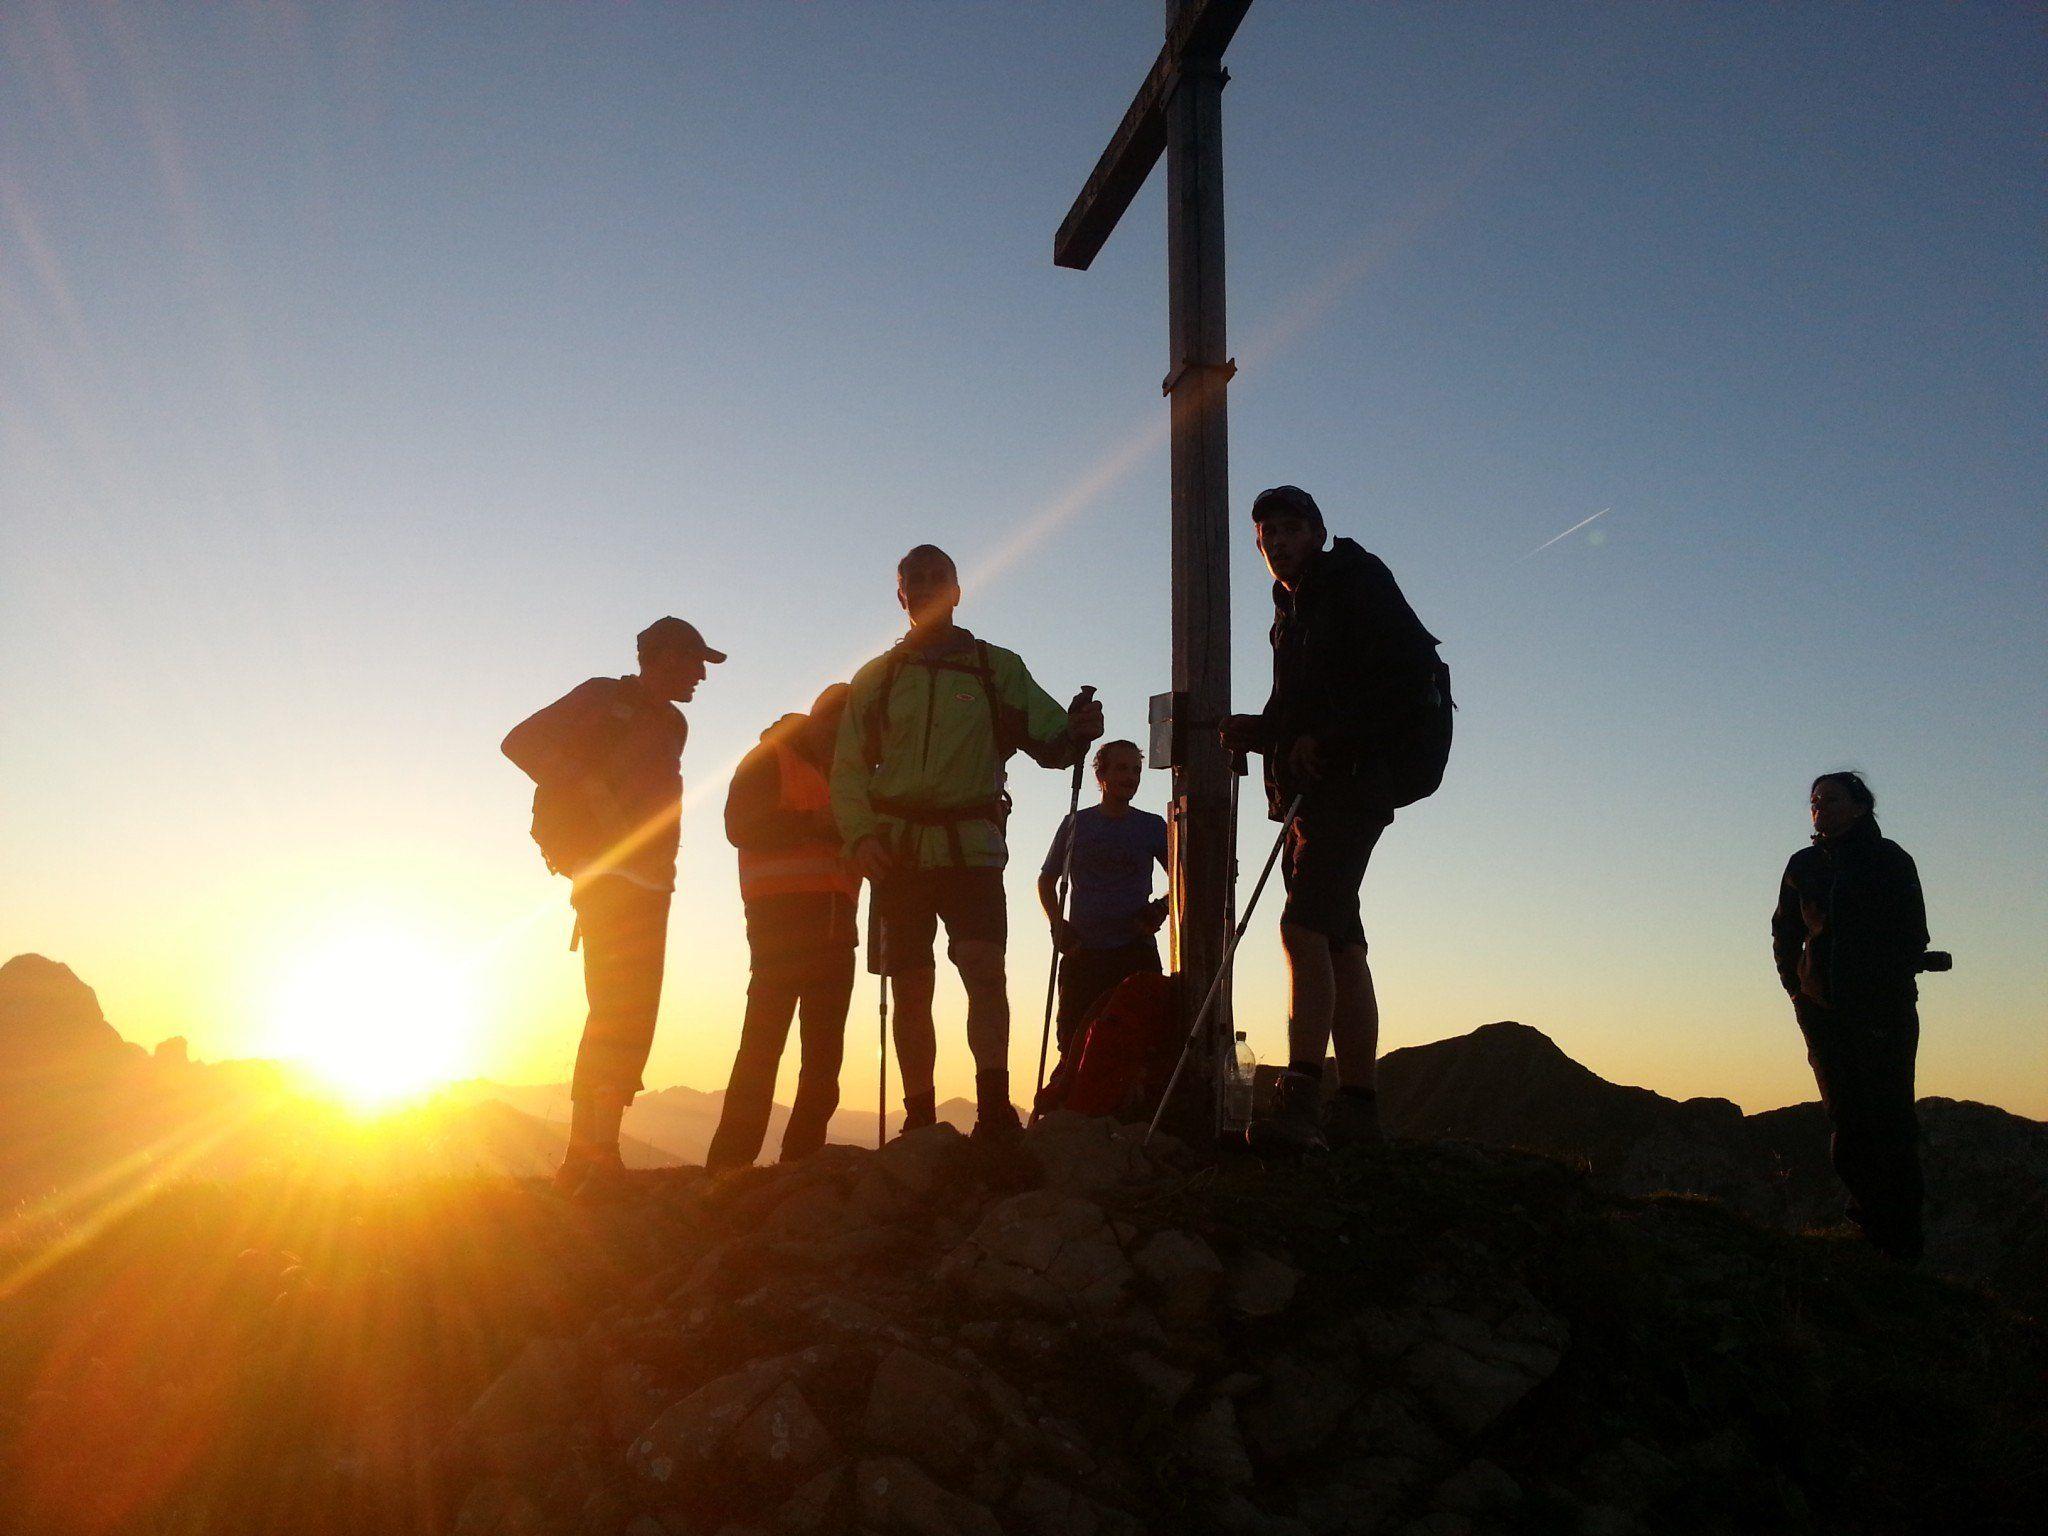 Der letzte der sieben Gipfel - die Höferspitze - wurde von Einigen bei Sonnenuntergang oder später bestiegen.